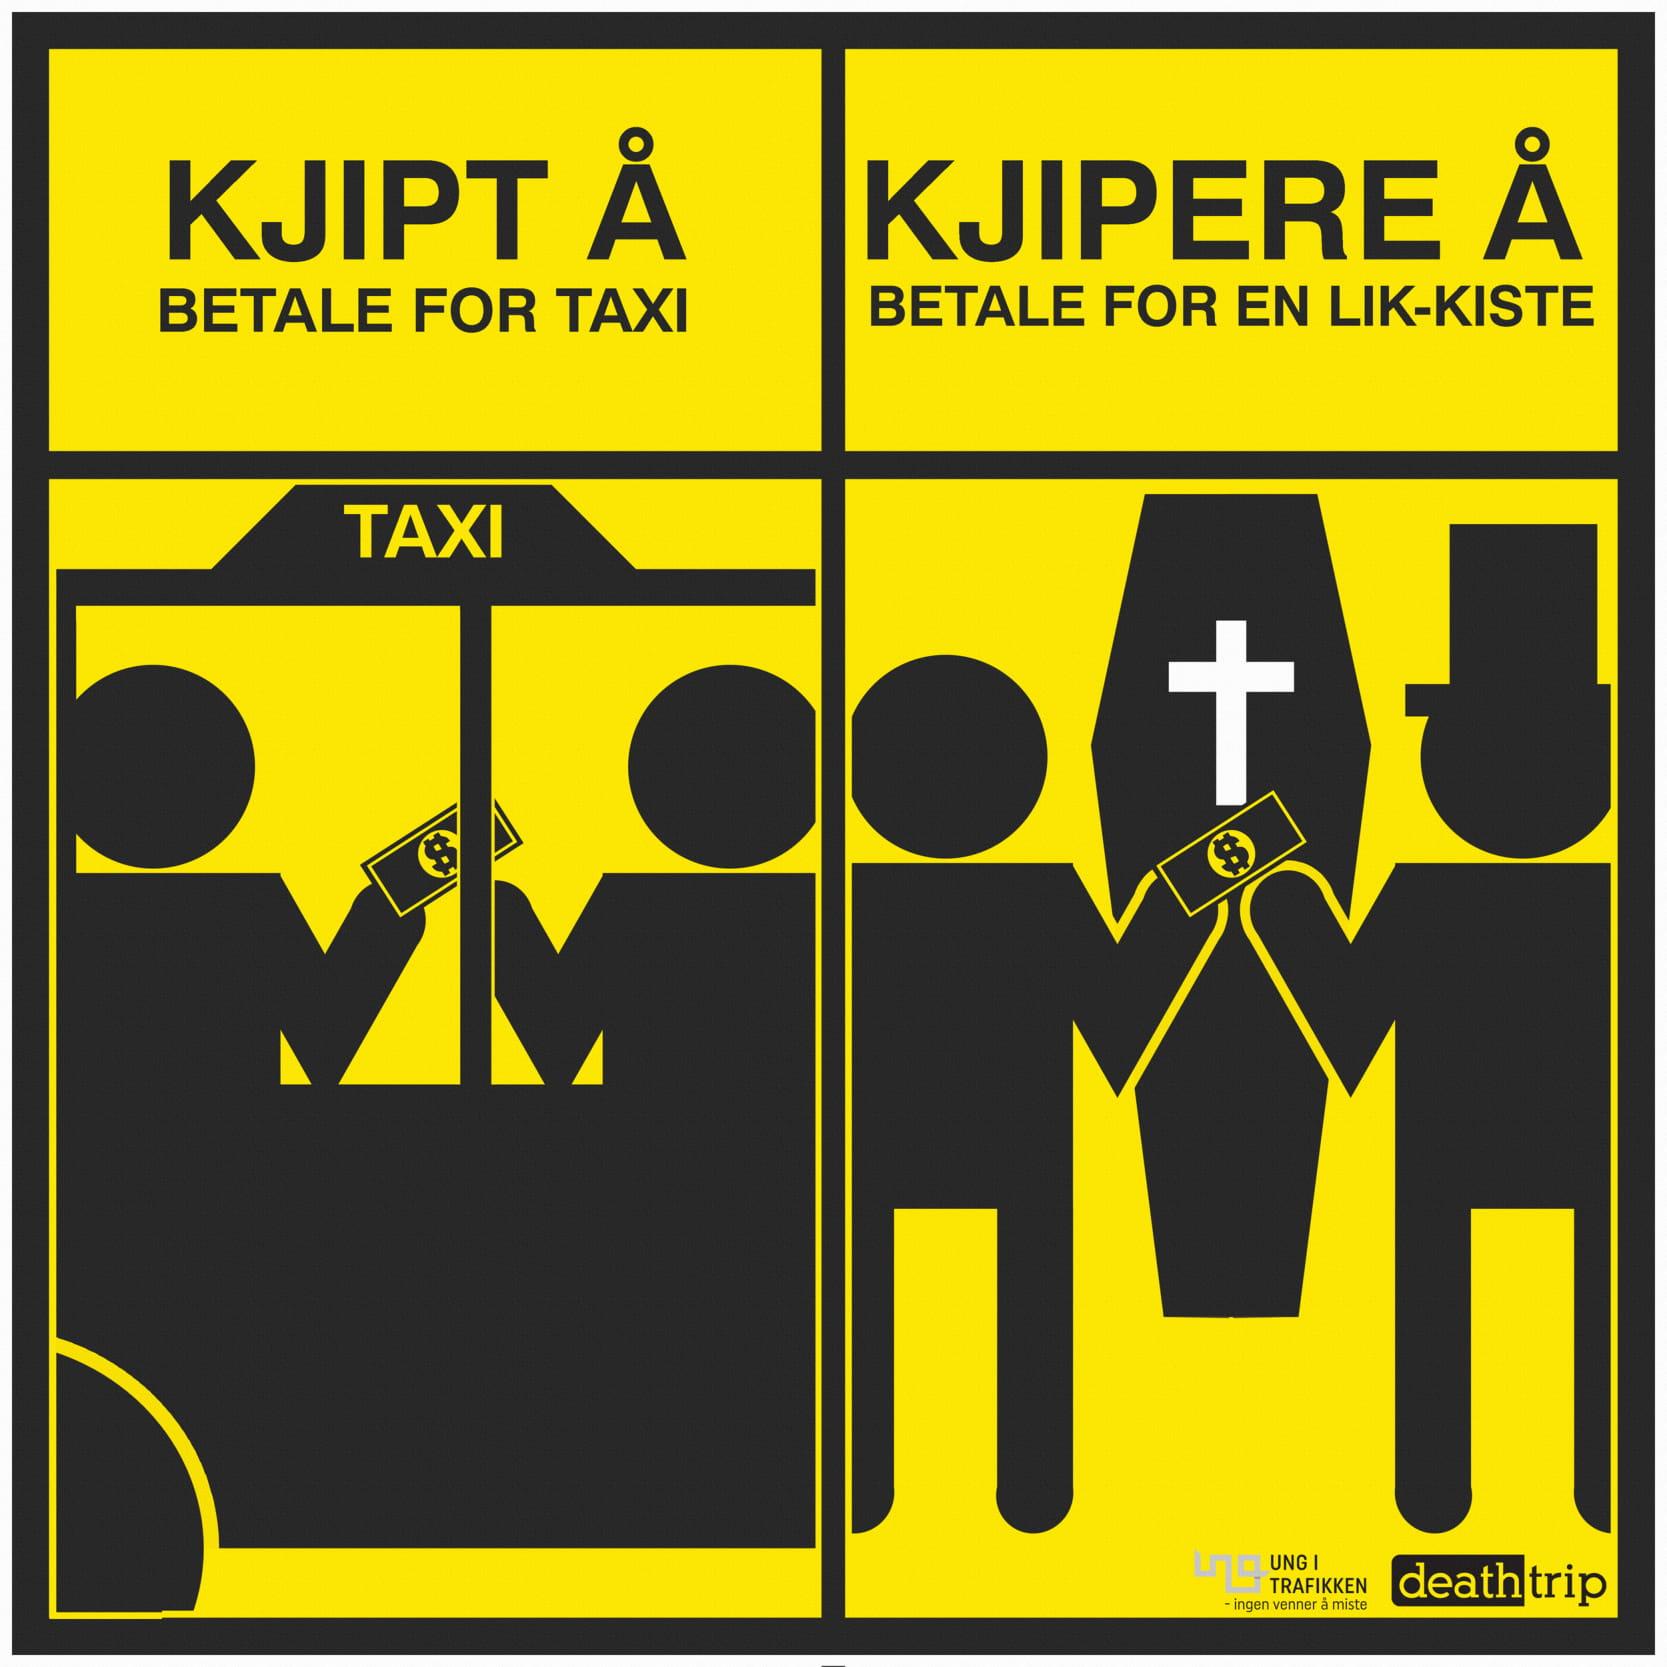 Tegneserie med tekst: Kjipt å betale for taxi. Klipere å betale for en lik-kiste.